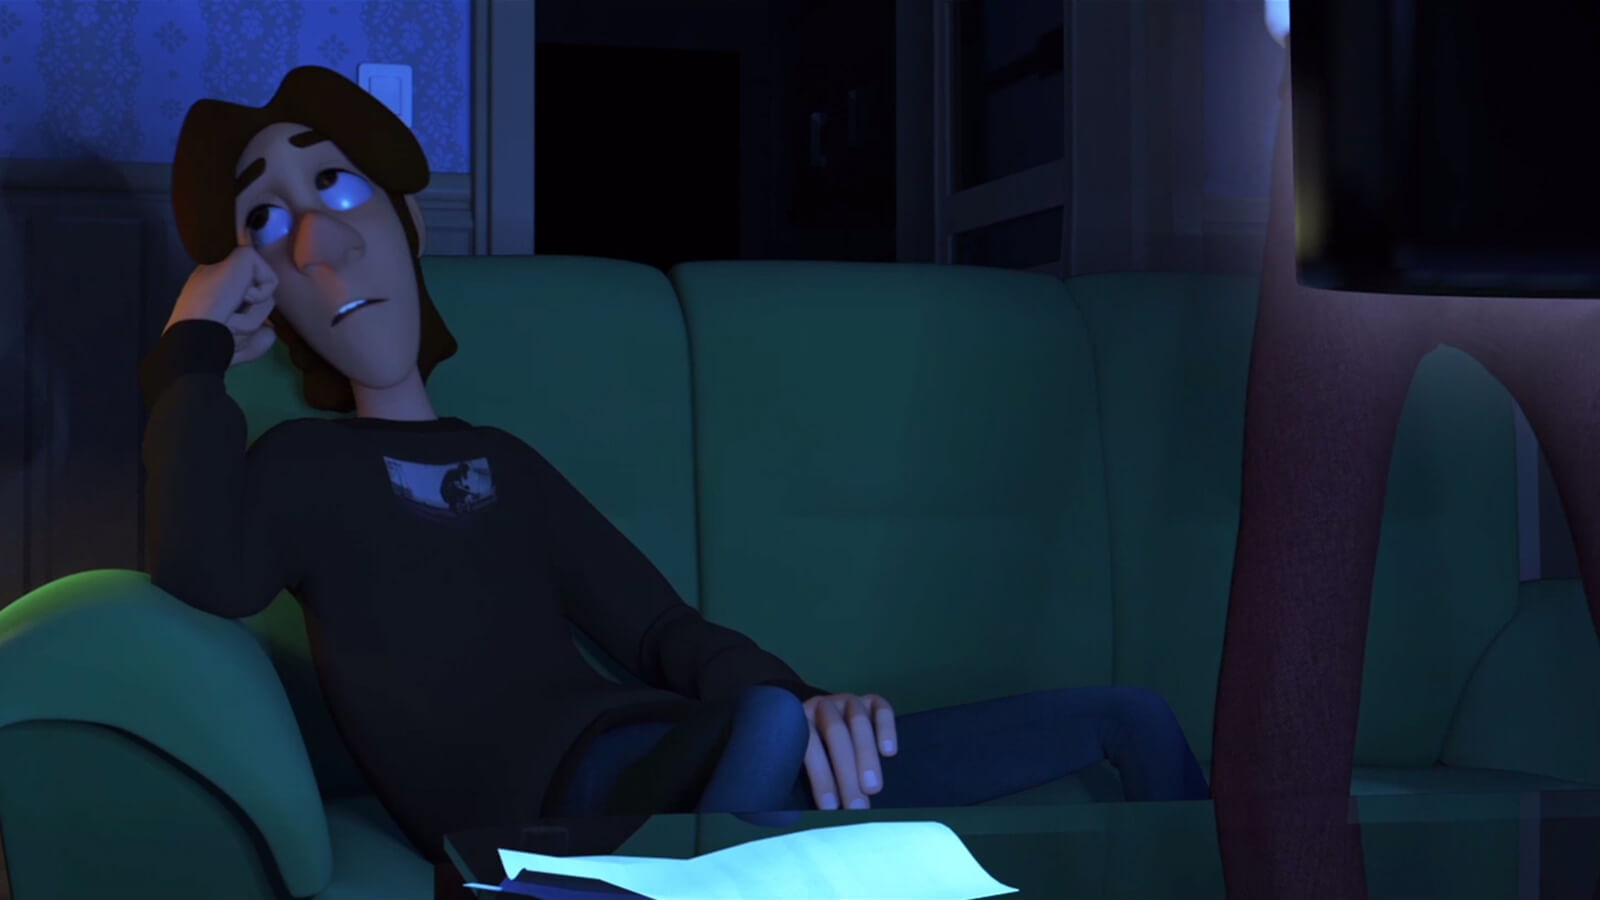 Un adolescente con jersey negro sentado sobre un sofá en una habitación poco iluminada aparta la mirada a un lado.